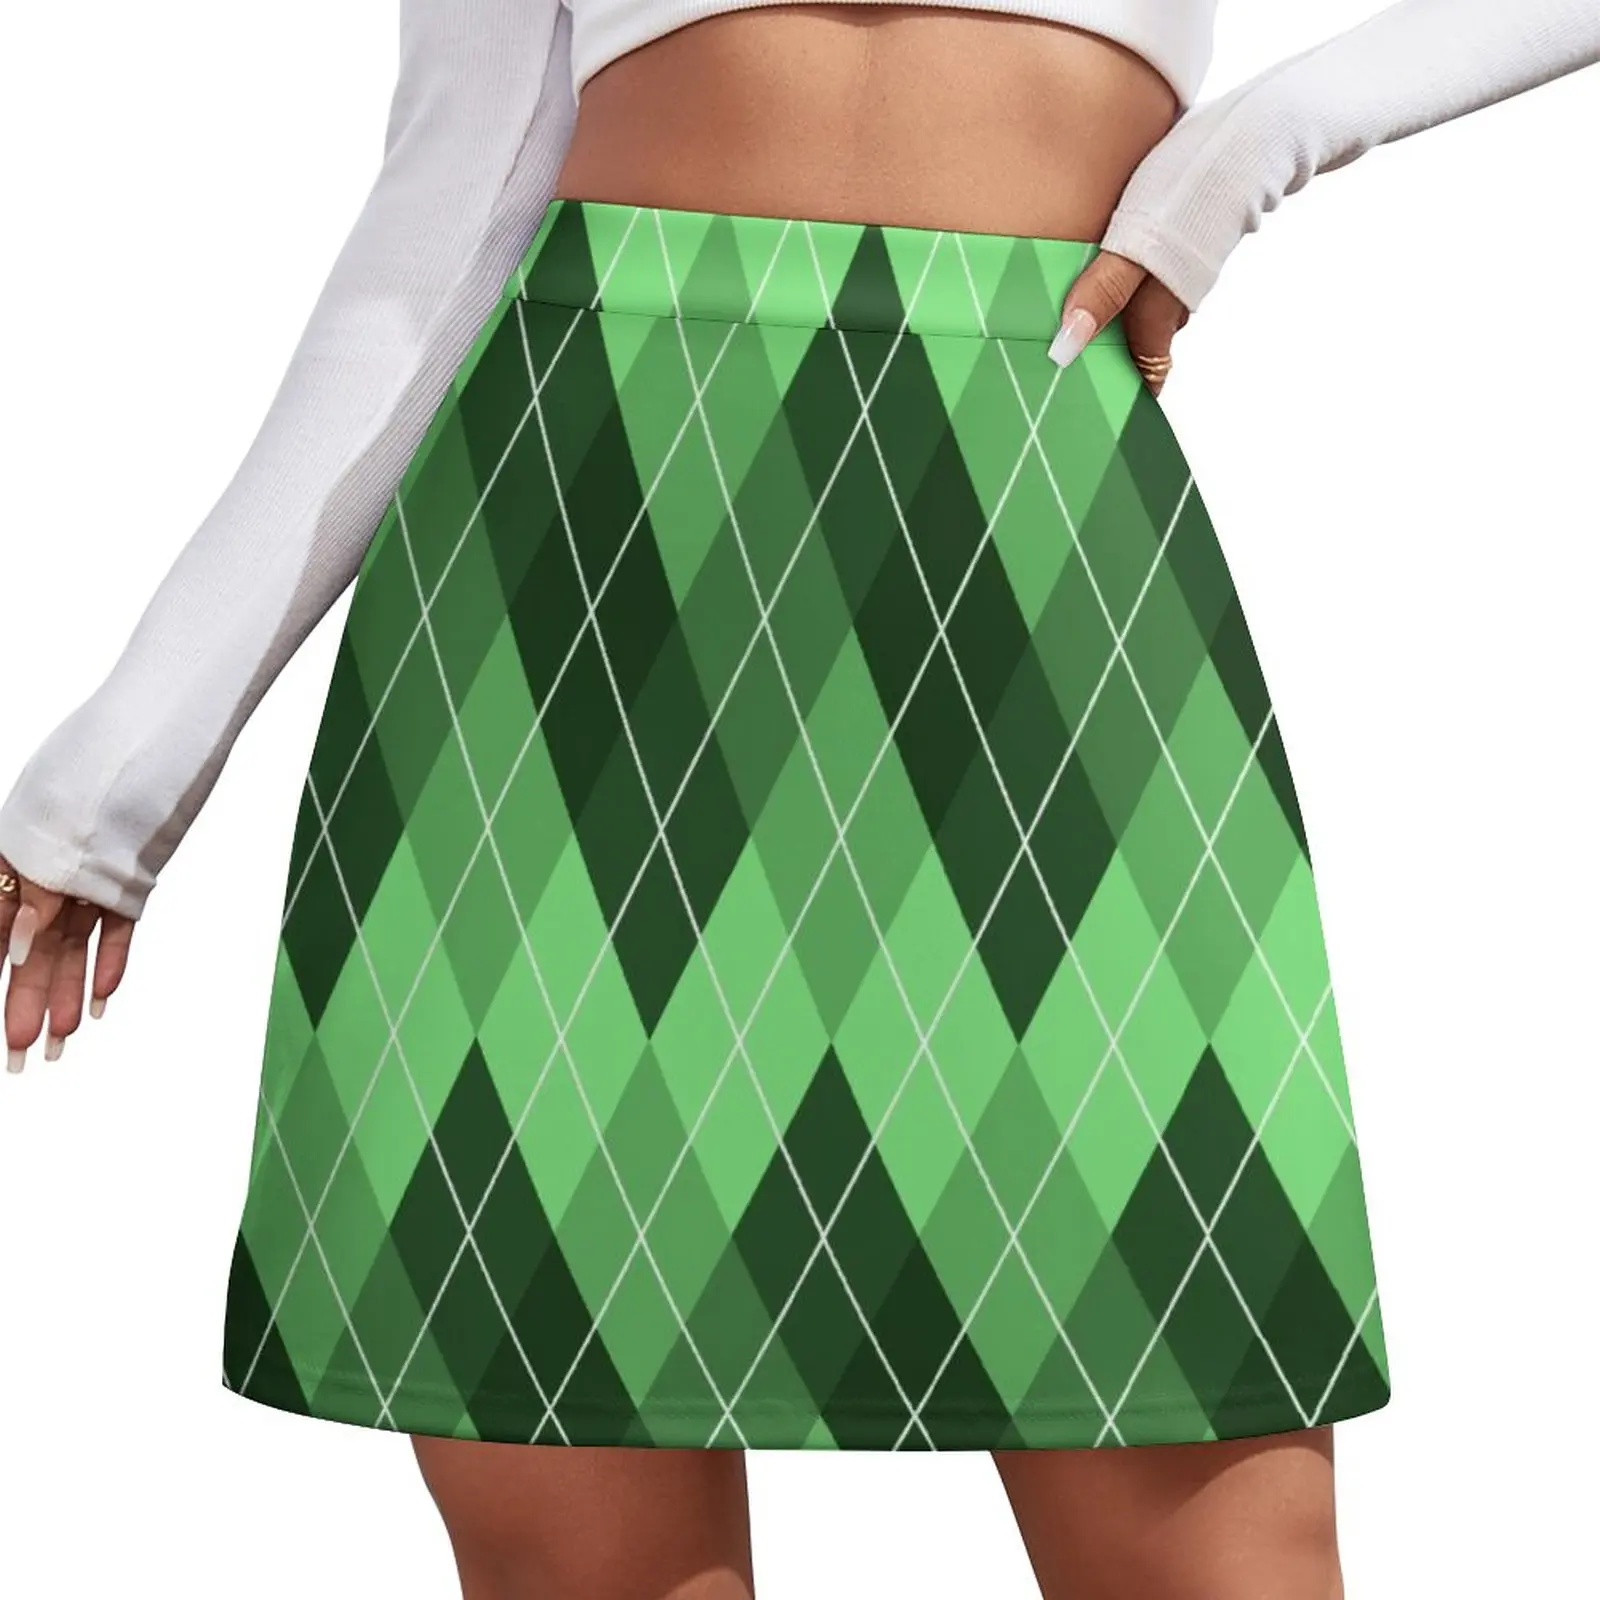 Green Argyle Pattern Mini Skirt mini skirt for women women's stylish skirts